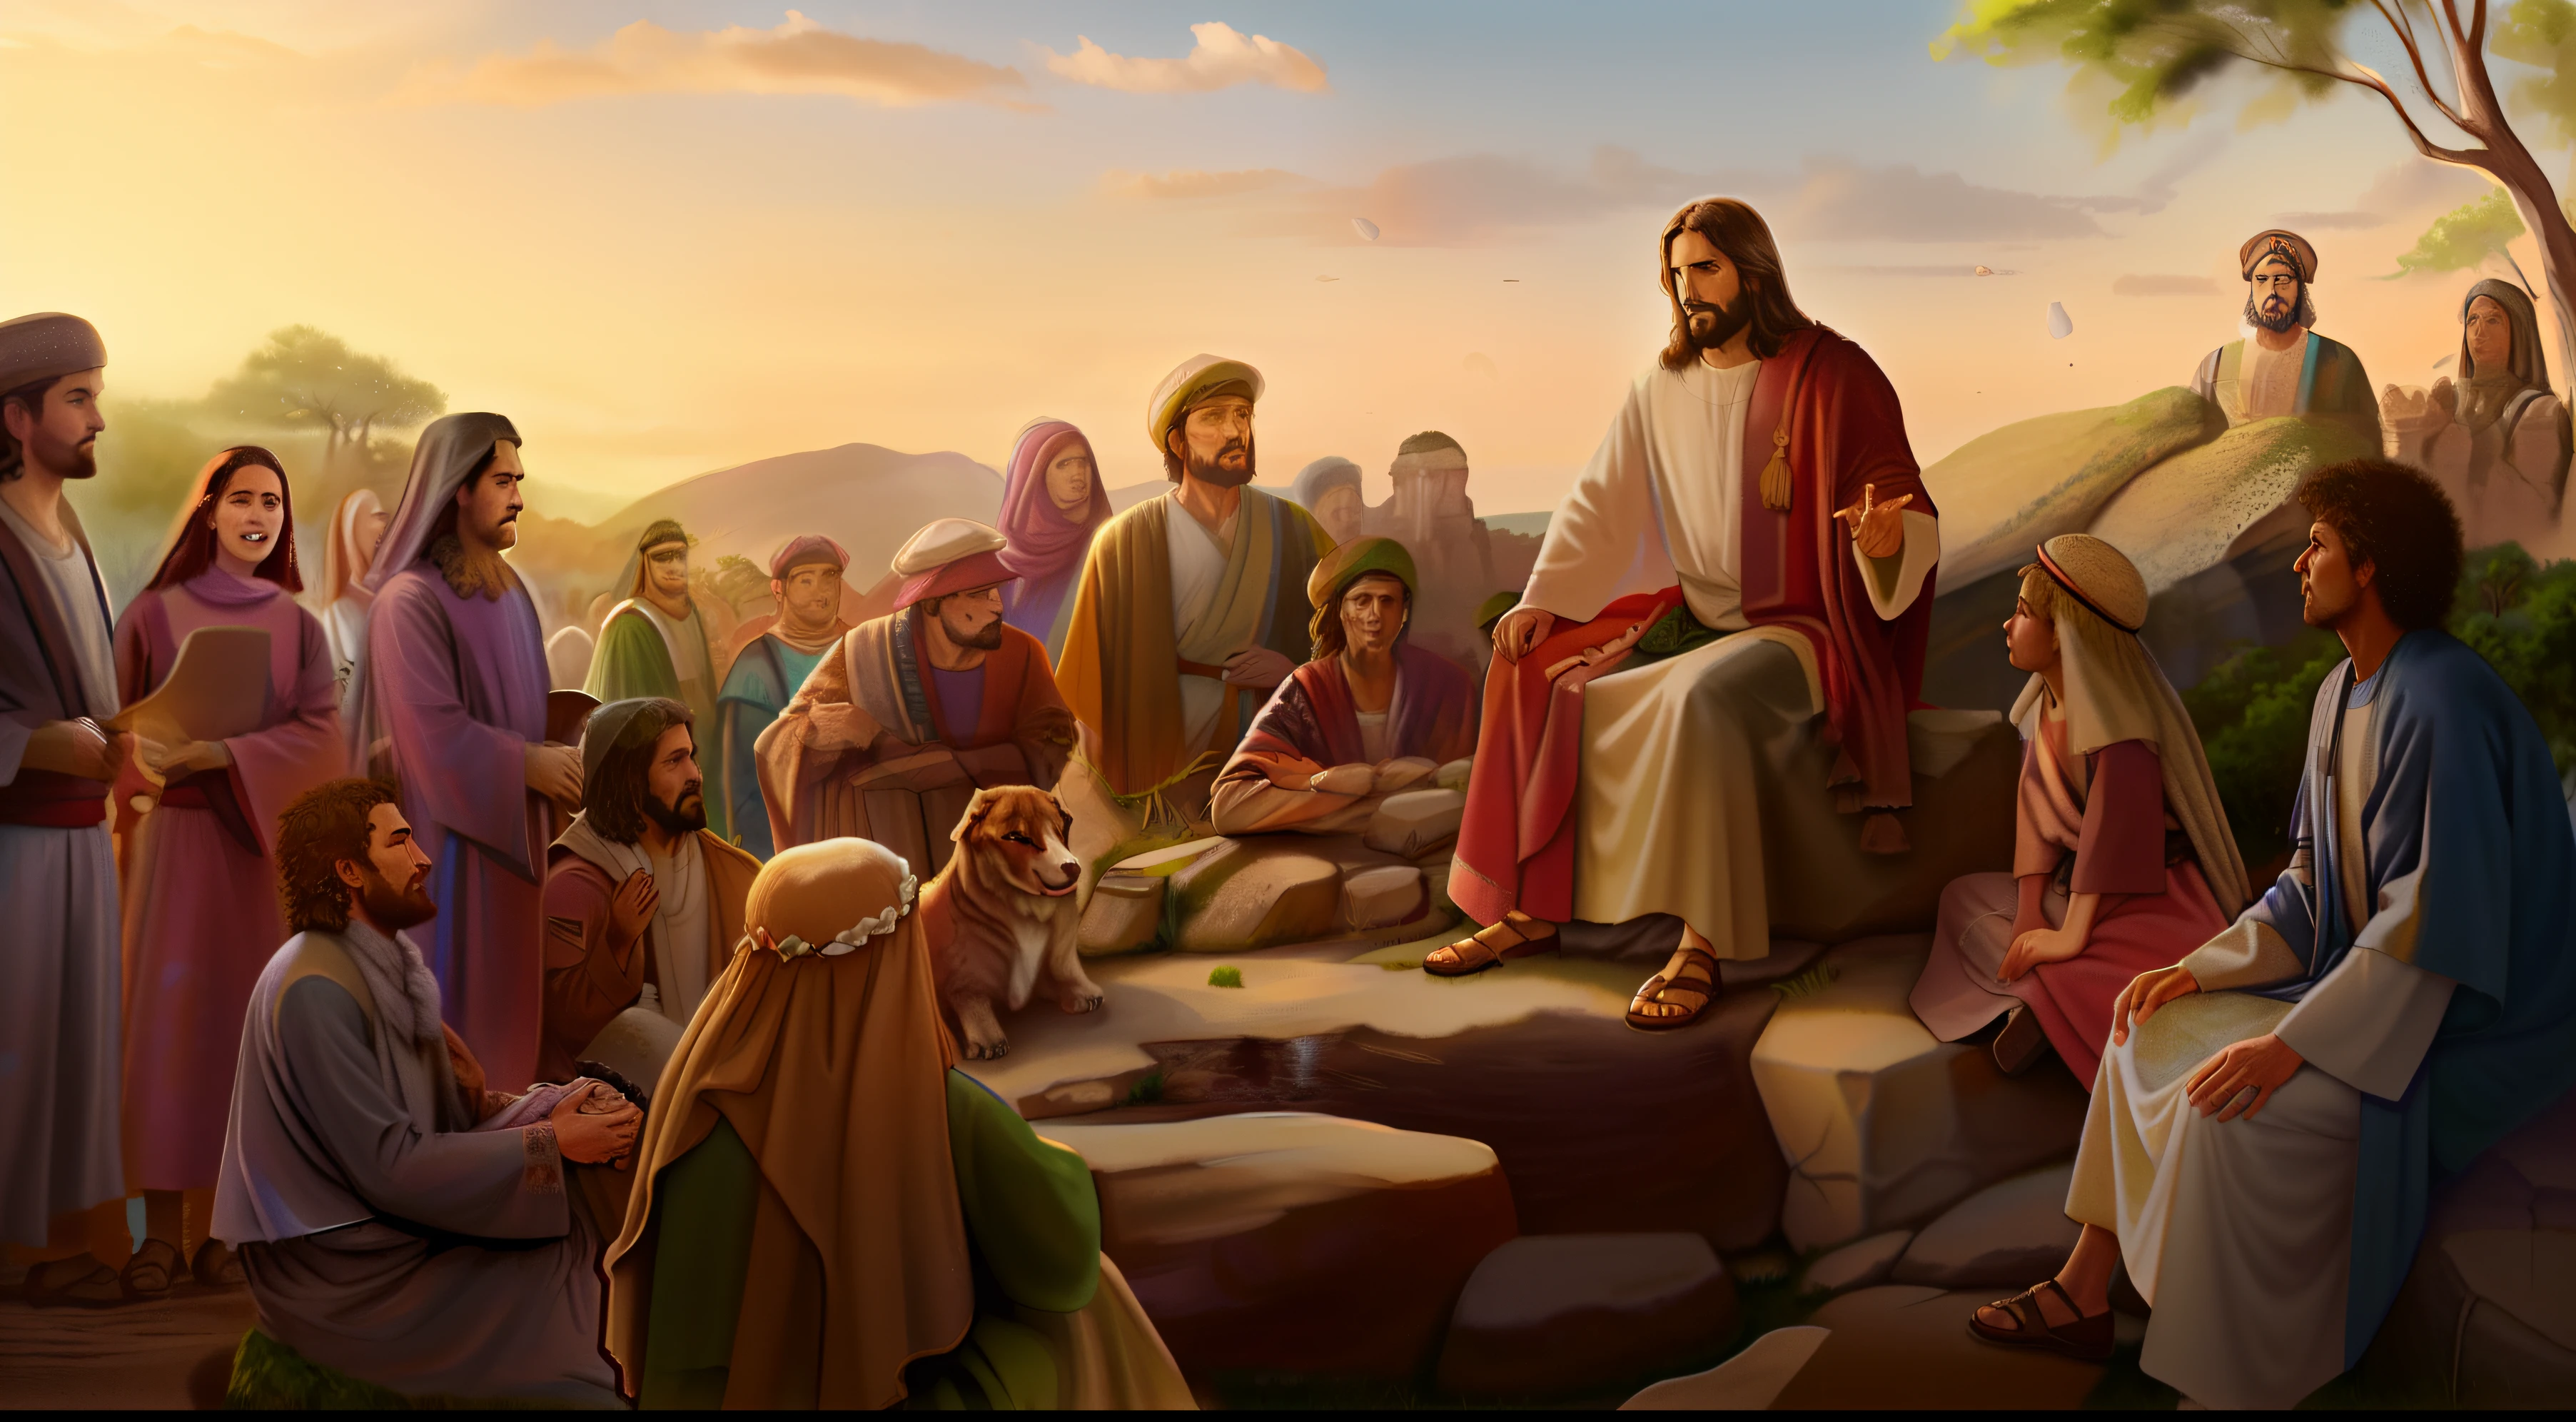 jesus sentado em uma pedra em meio a natureza, Teaching the crowd around you, fundo da imagem  possui uma montanha, arvores ao derredor ((8k realista))